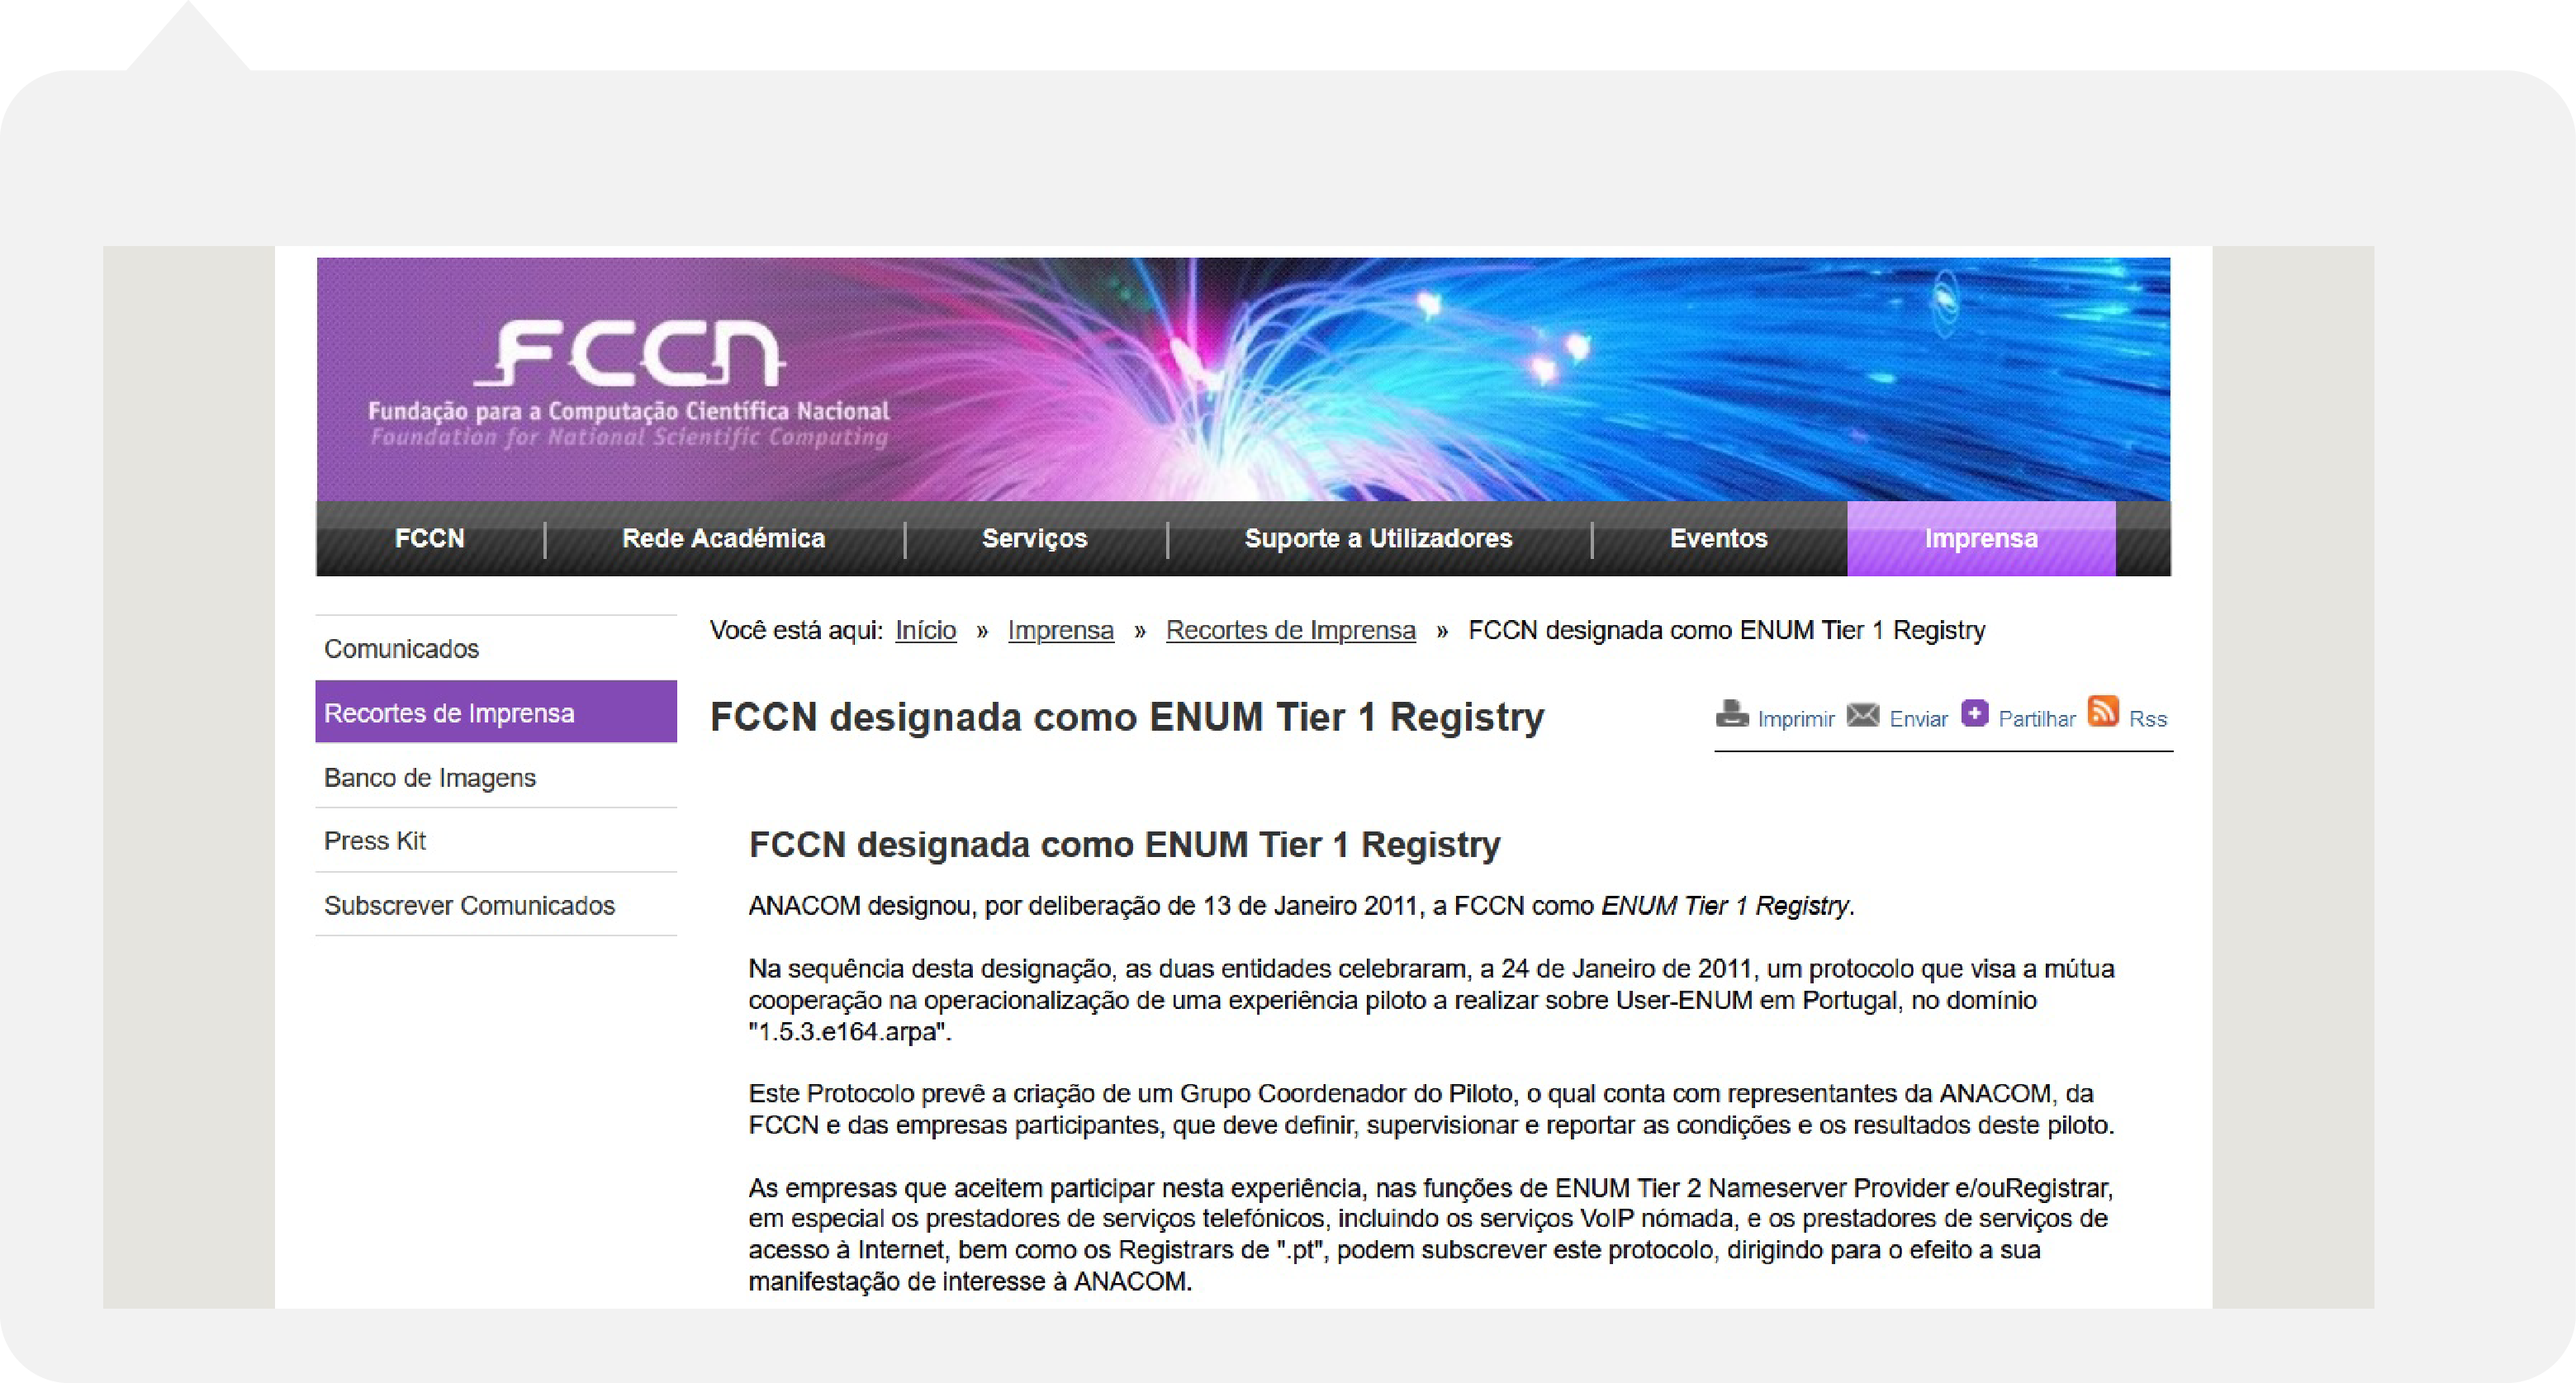 FCCN como Tier 1 Registry do domínio 1.5.3.e164.arpa